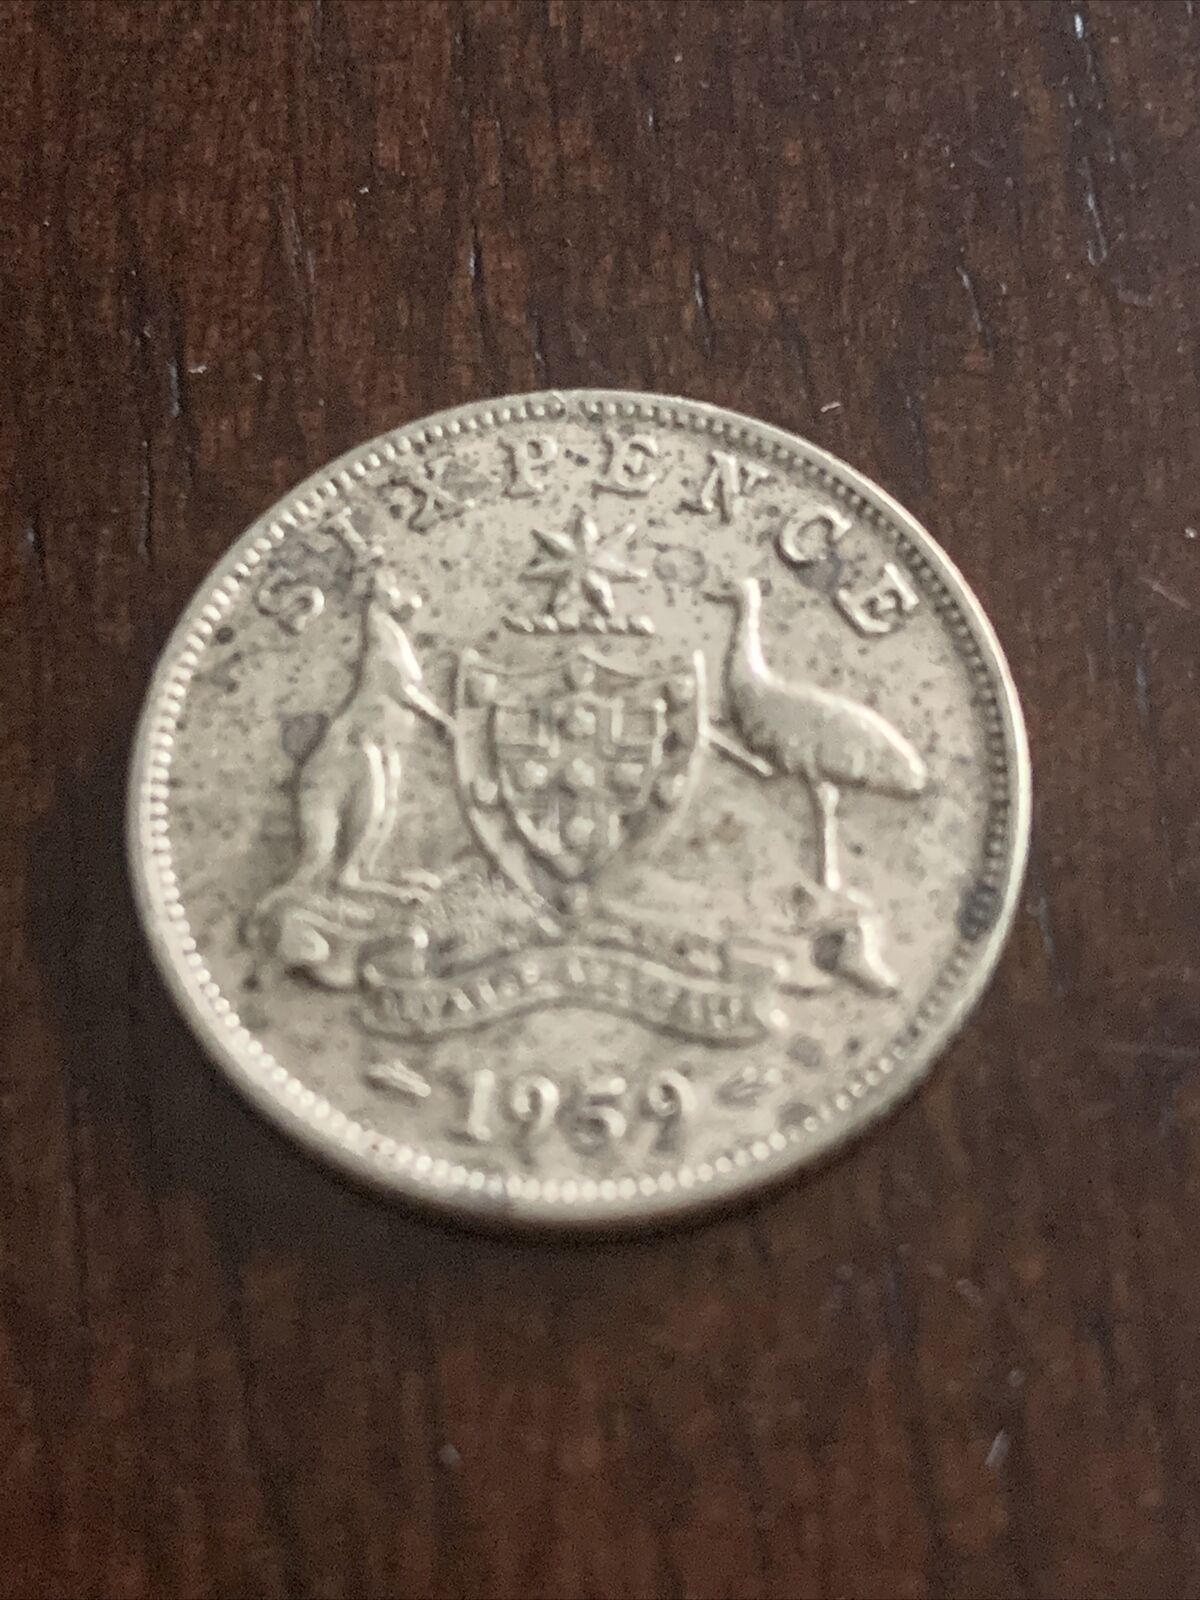 1959 Australia Six Pence Km#52 Elizabeth Ii Silver Coin